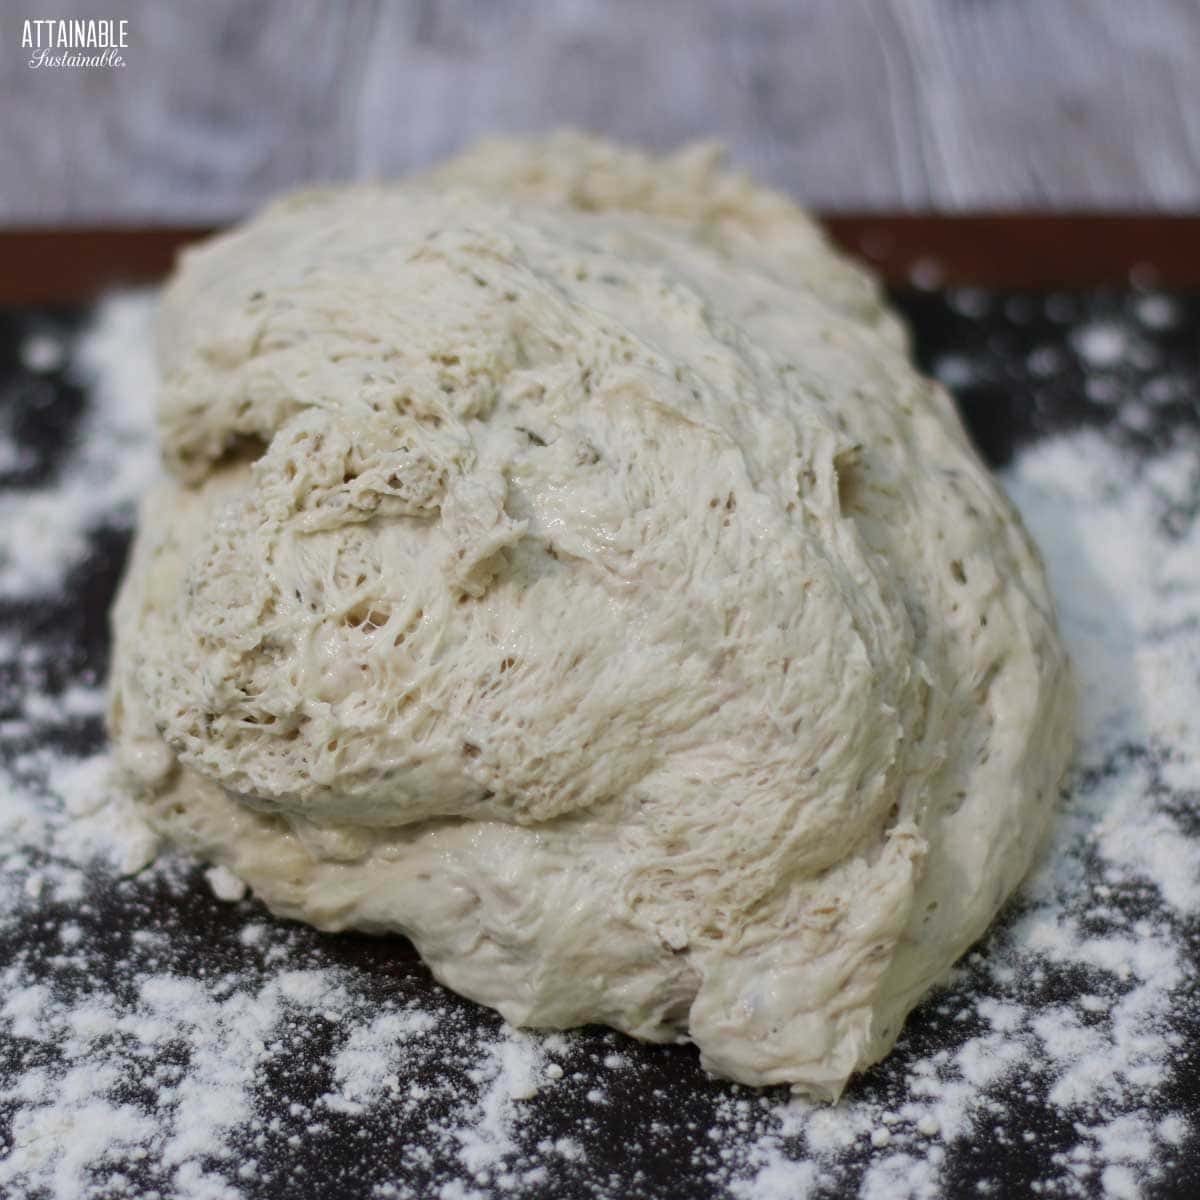 unformed bread dough.